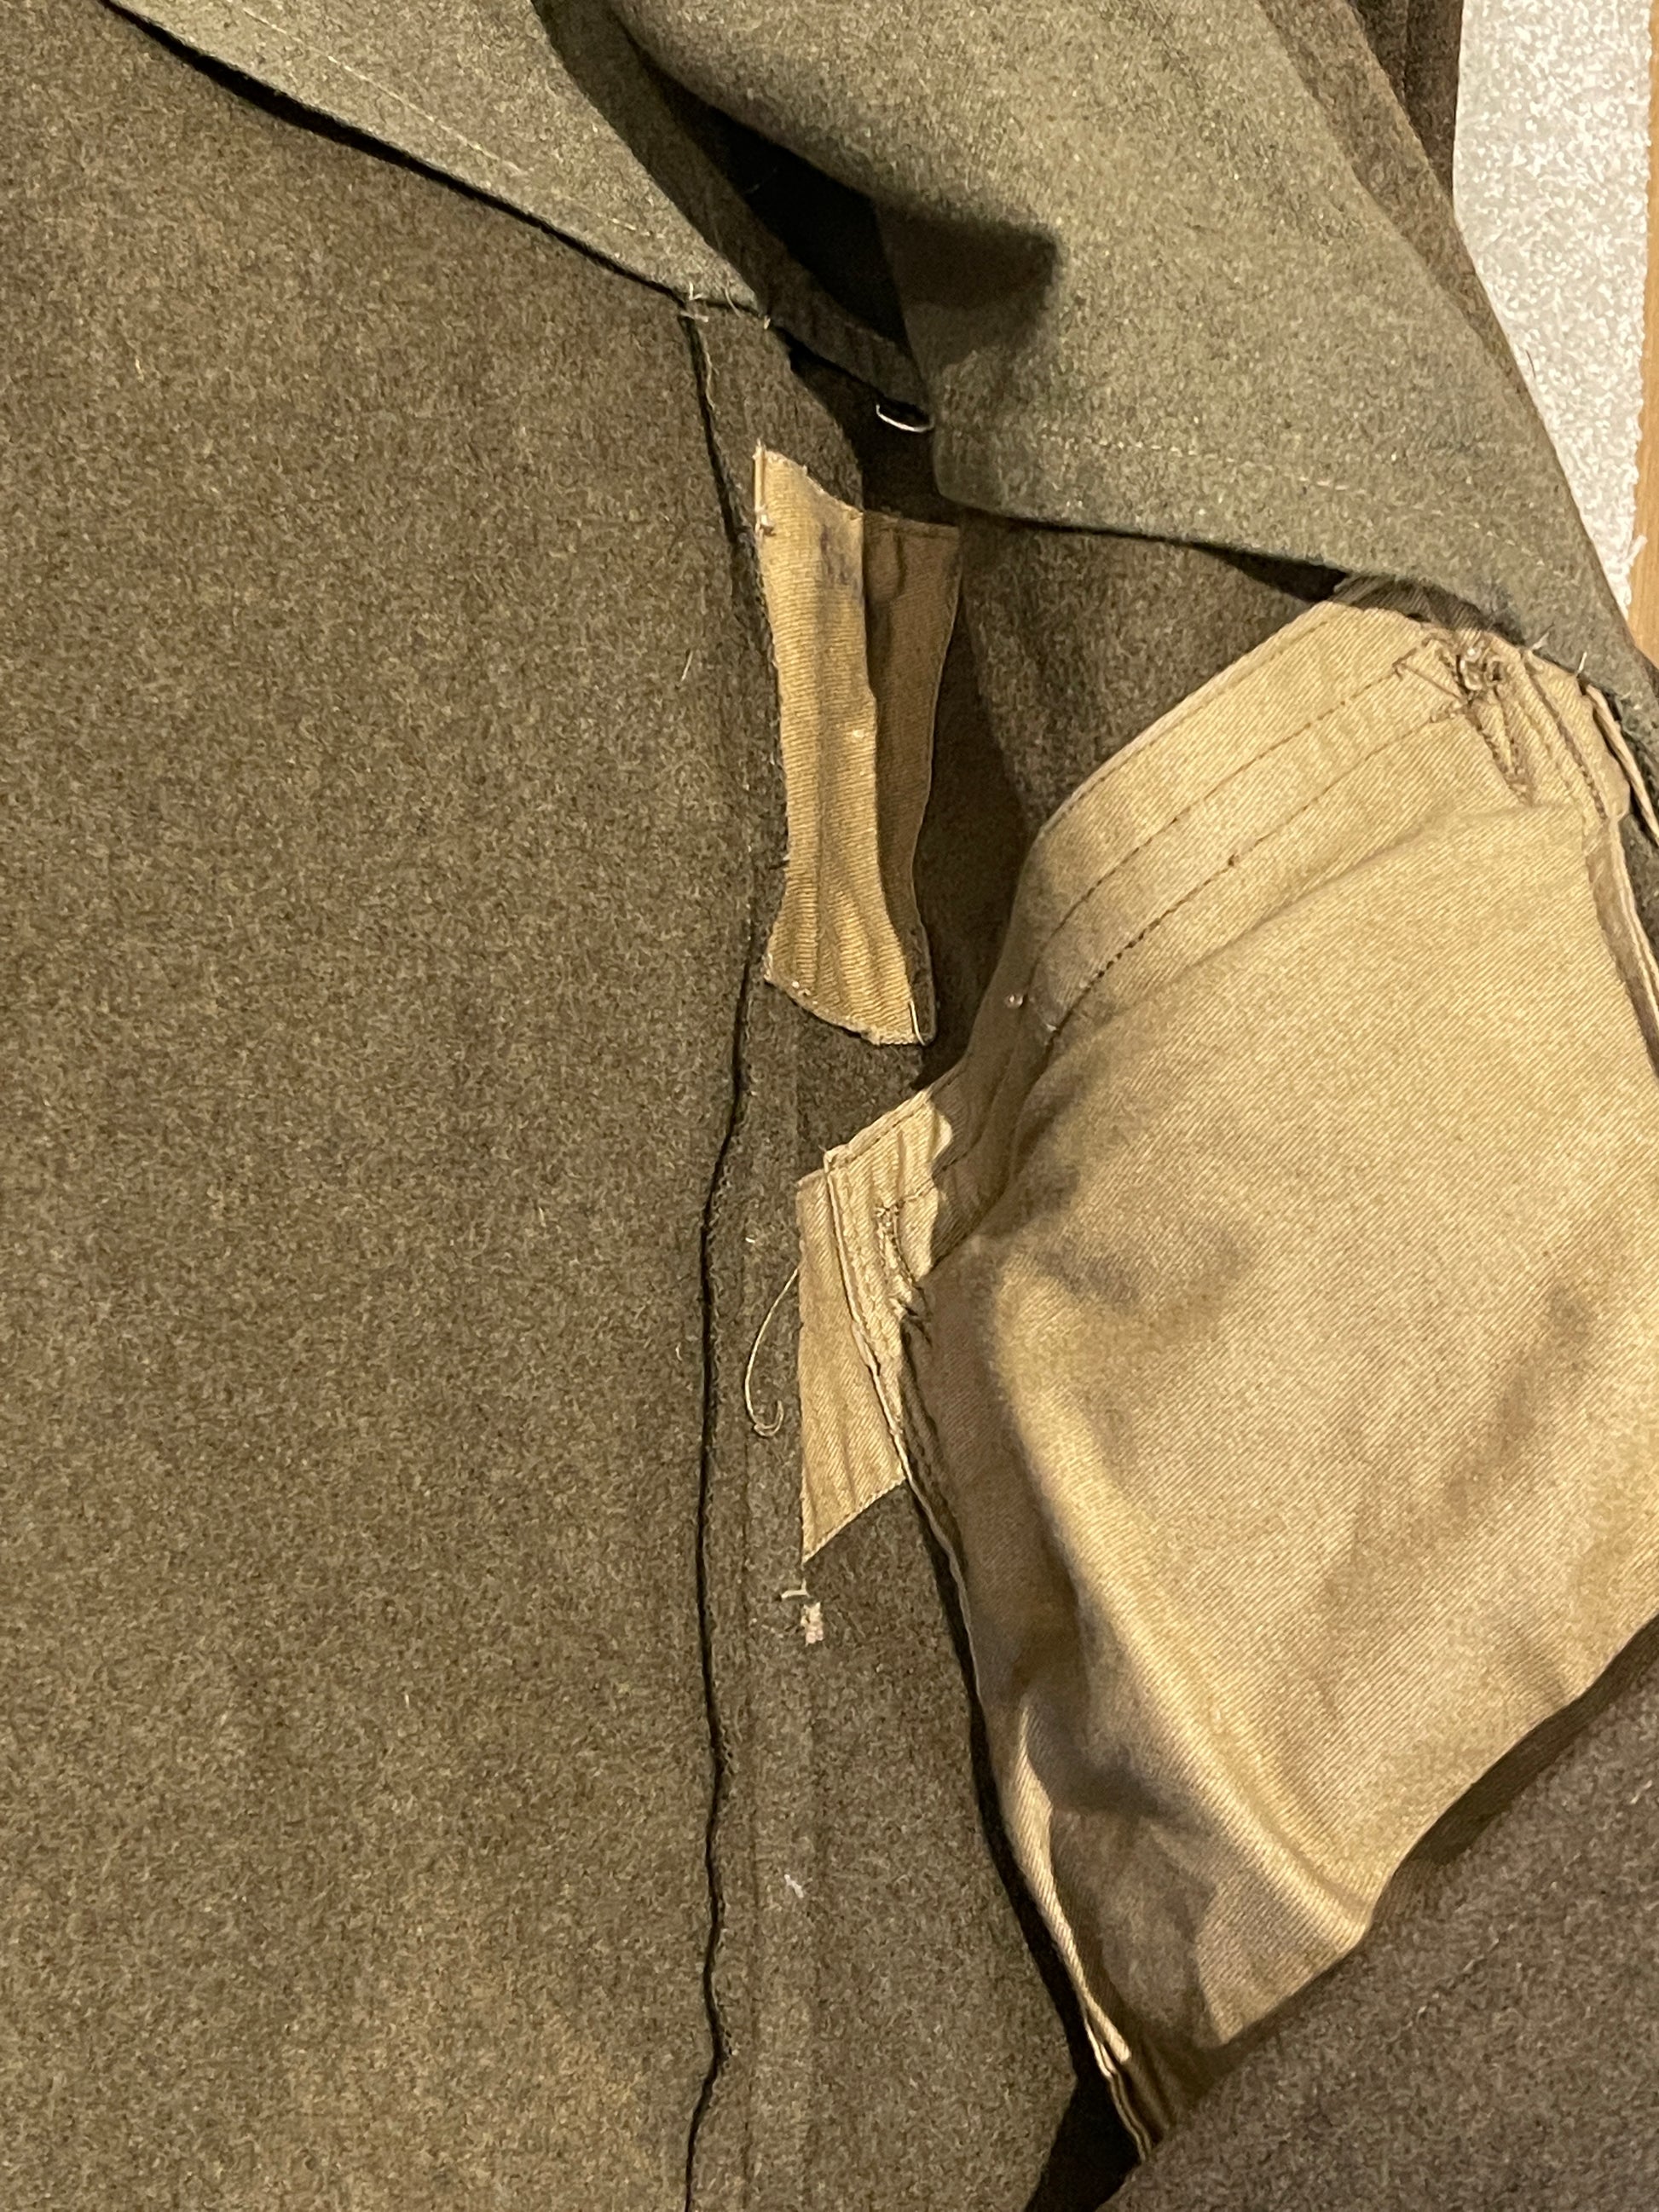 British Great Coat Dismounted 1940 Pattern